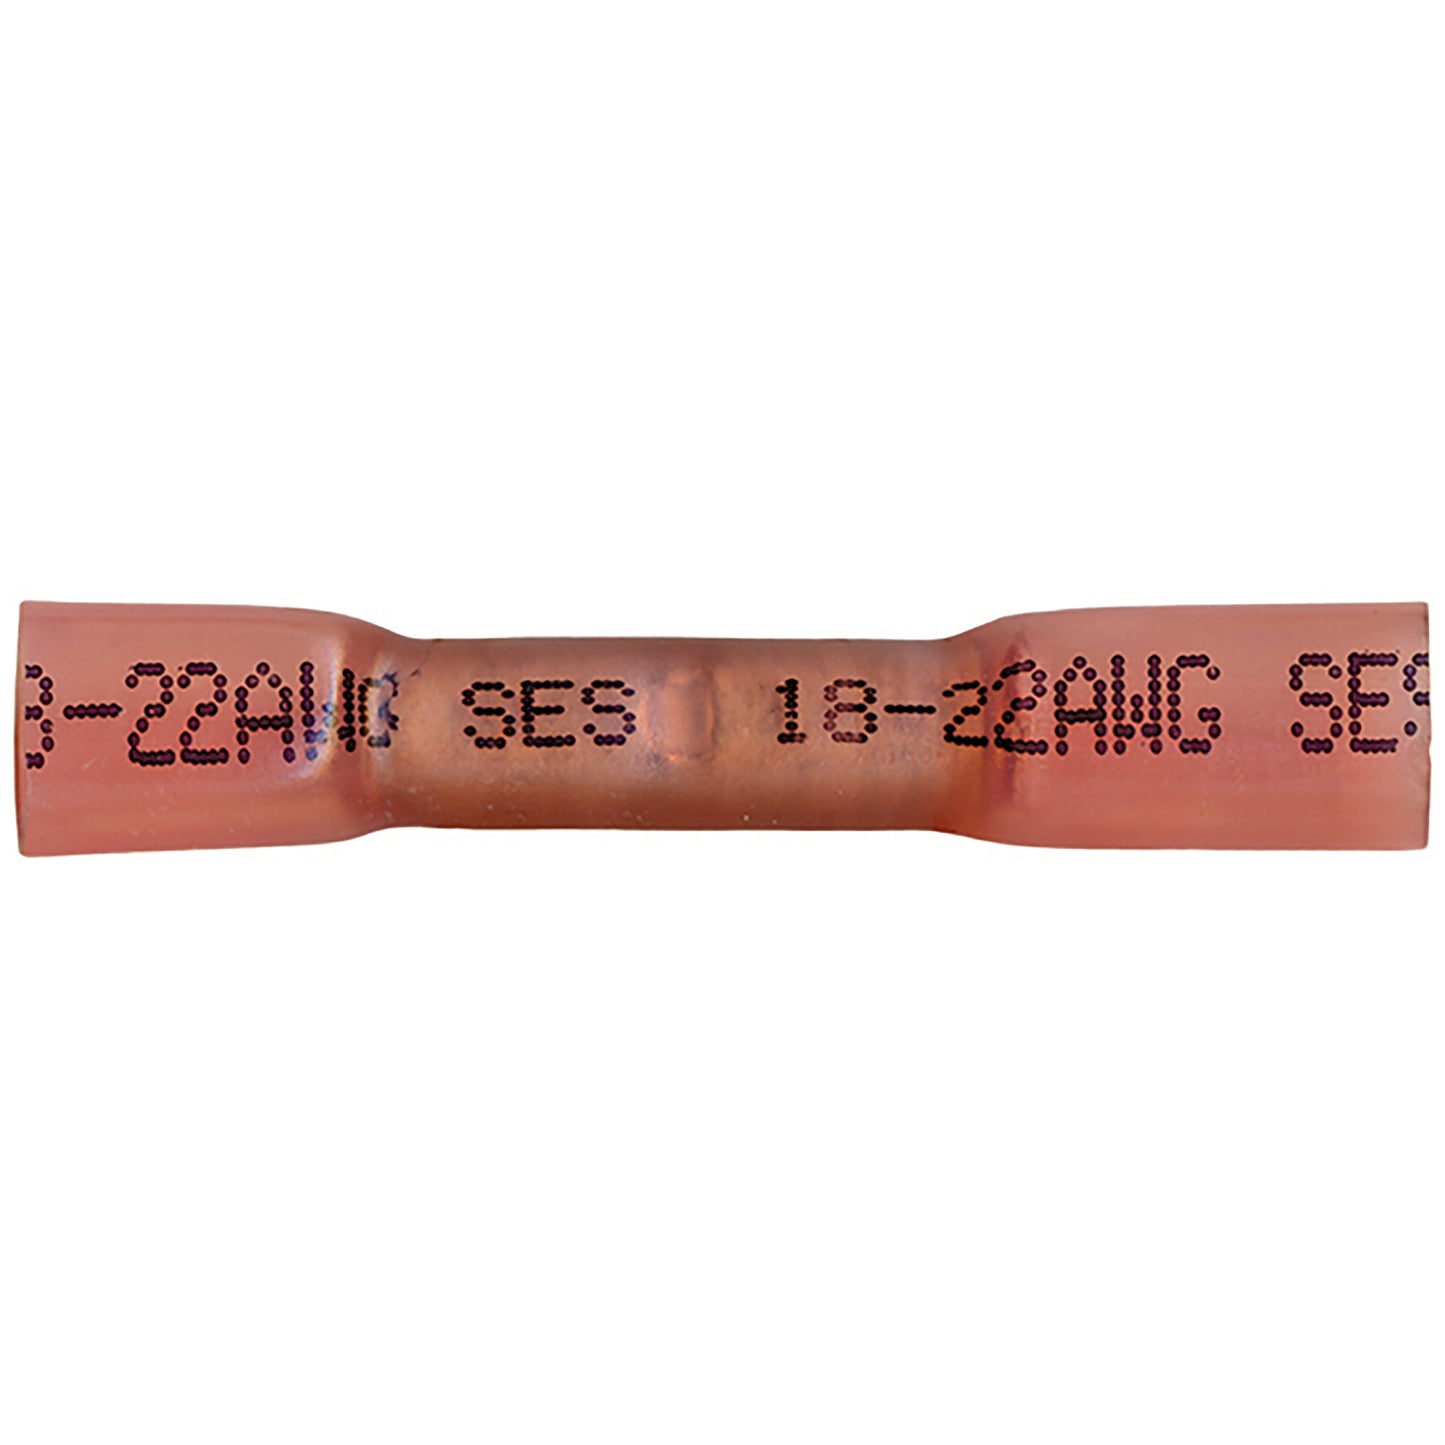 Heat Shrink & Crimp Red Butt Connector 22-18 Gauge - 100 Pack